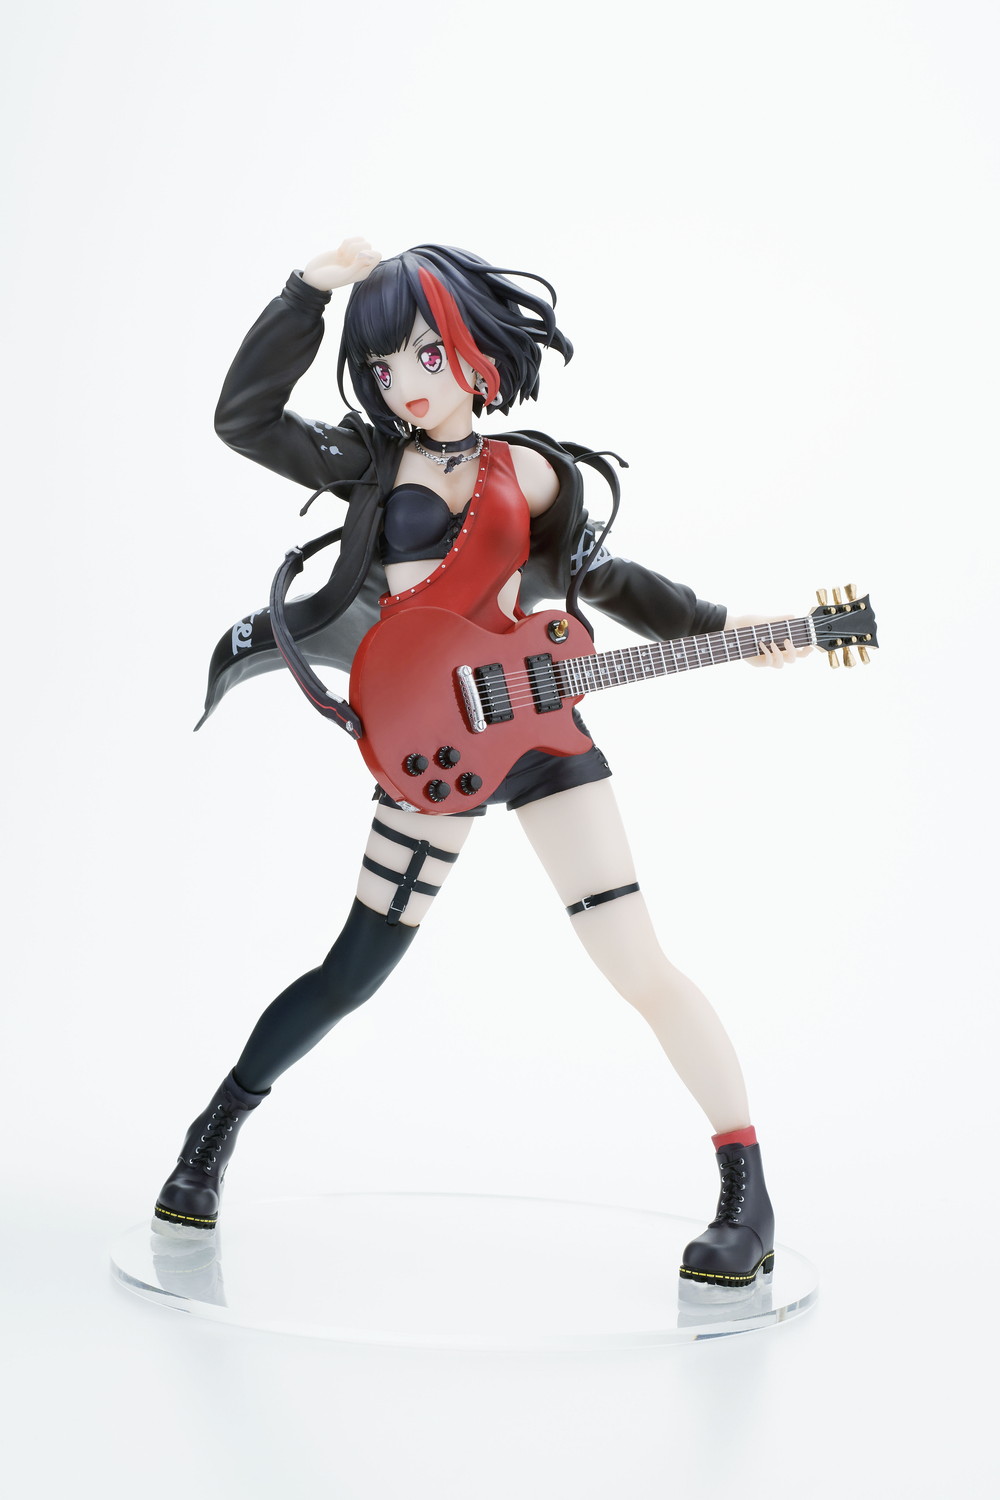 ガルパ Afterglow美竹蘭が1 7スケールで立体化 黒髪ショートヘアに赤メッシュの髪型やギター 衣装など細部にこだわり Anime Recorder